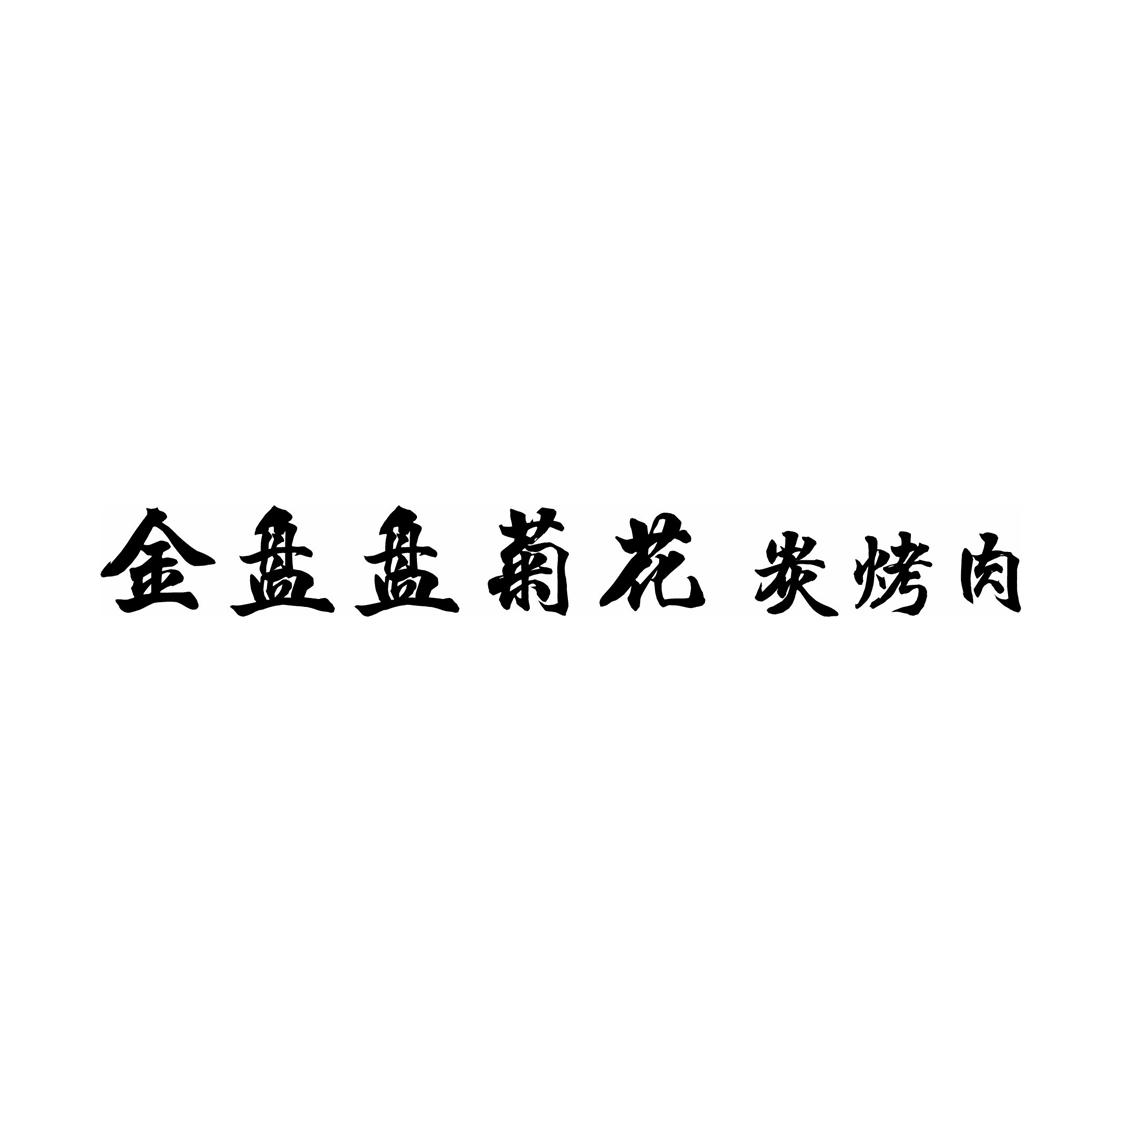 金盘盘菊花碳烤肉logo